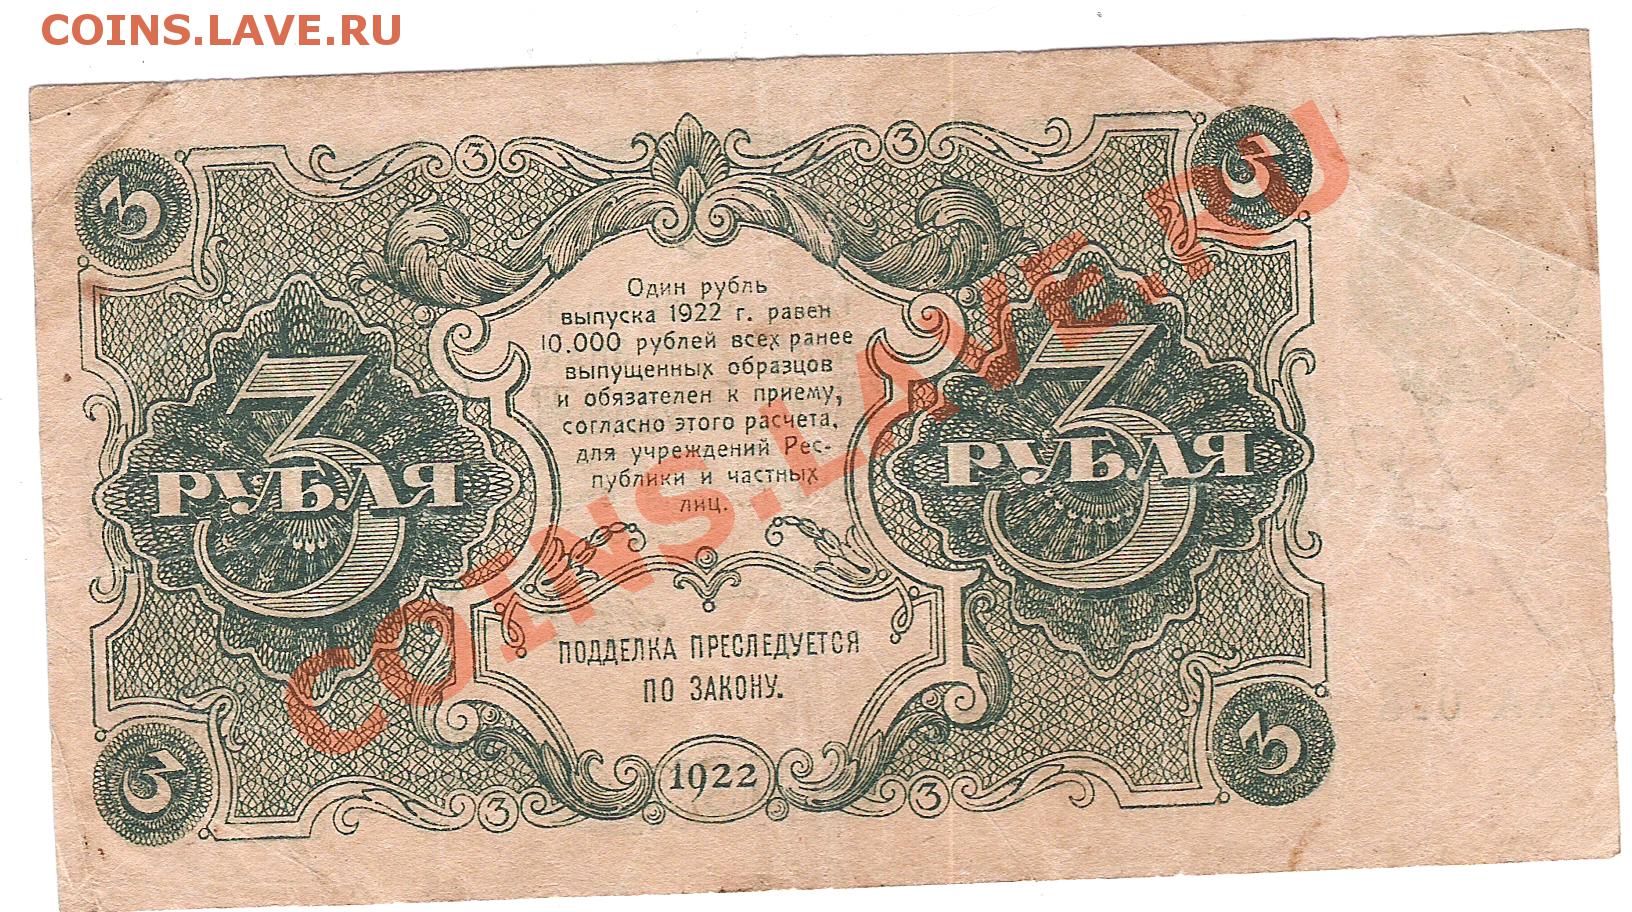 Шестьдесят три рубля. 250 Рублей 1922. 25000 Рублей 1922. Латвийский рубль 1922. Выпуск советских марок 1922.